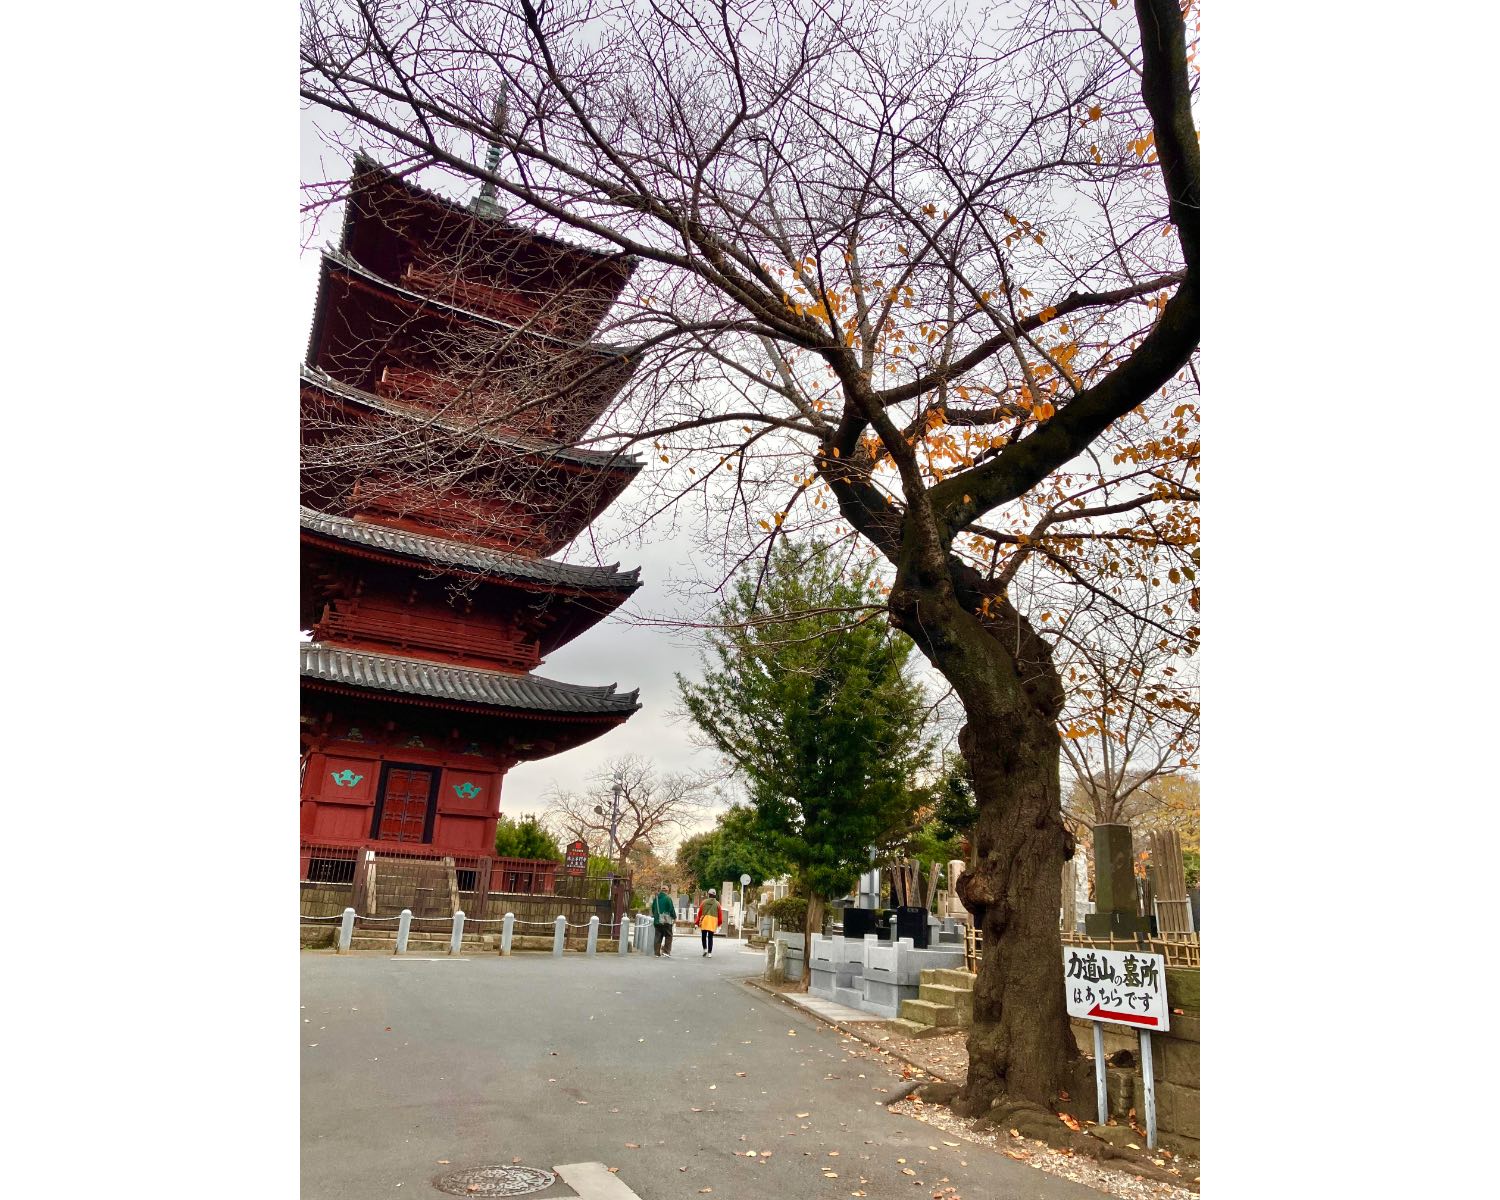 大きな門の階段をのぼると、右手には五重塔が。まるで奈良や京都などの古都のような、景色が広がっています。それでいて、まるで公園のような親しみやすさも。人々がのんびりお散歩を楽しむ姿が見られます。